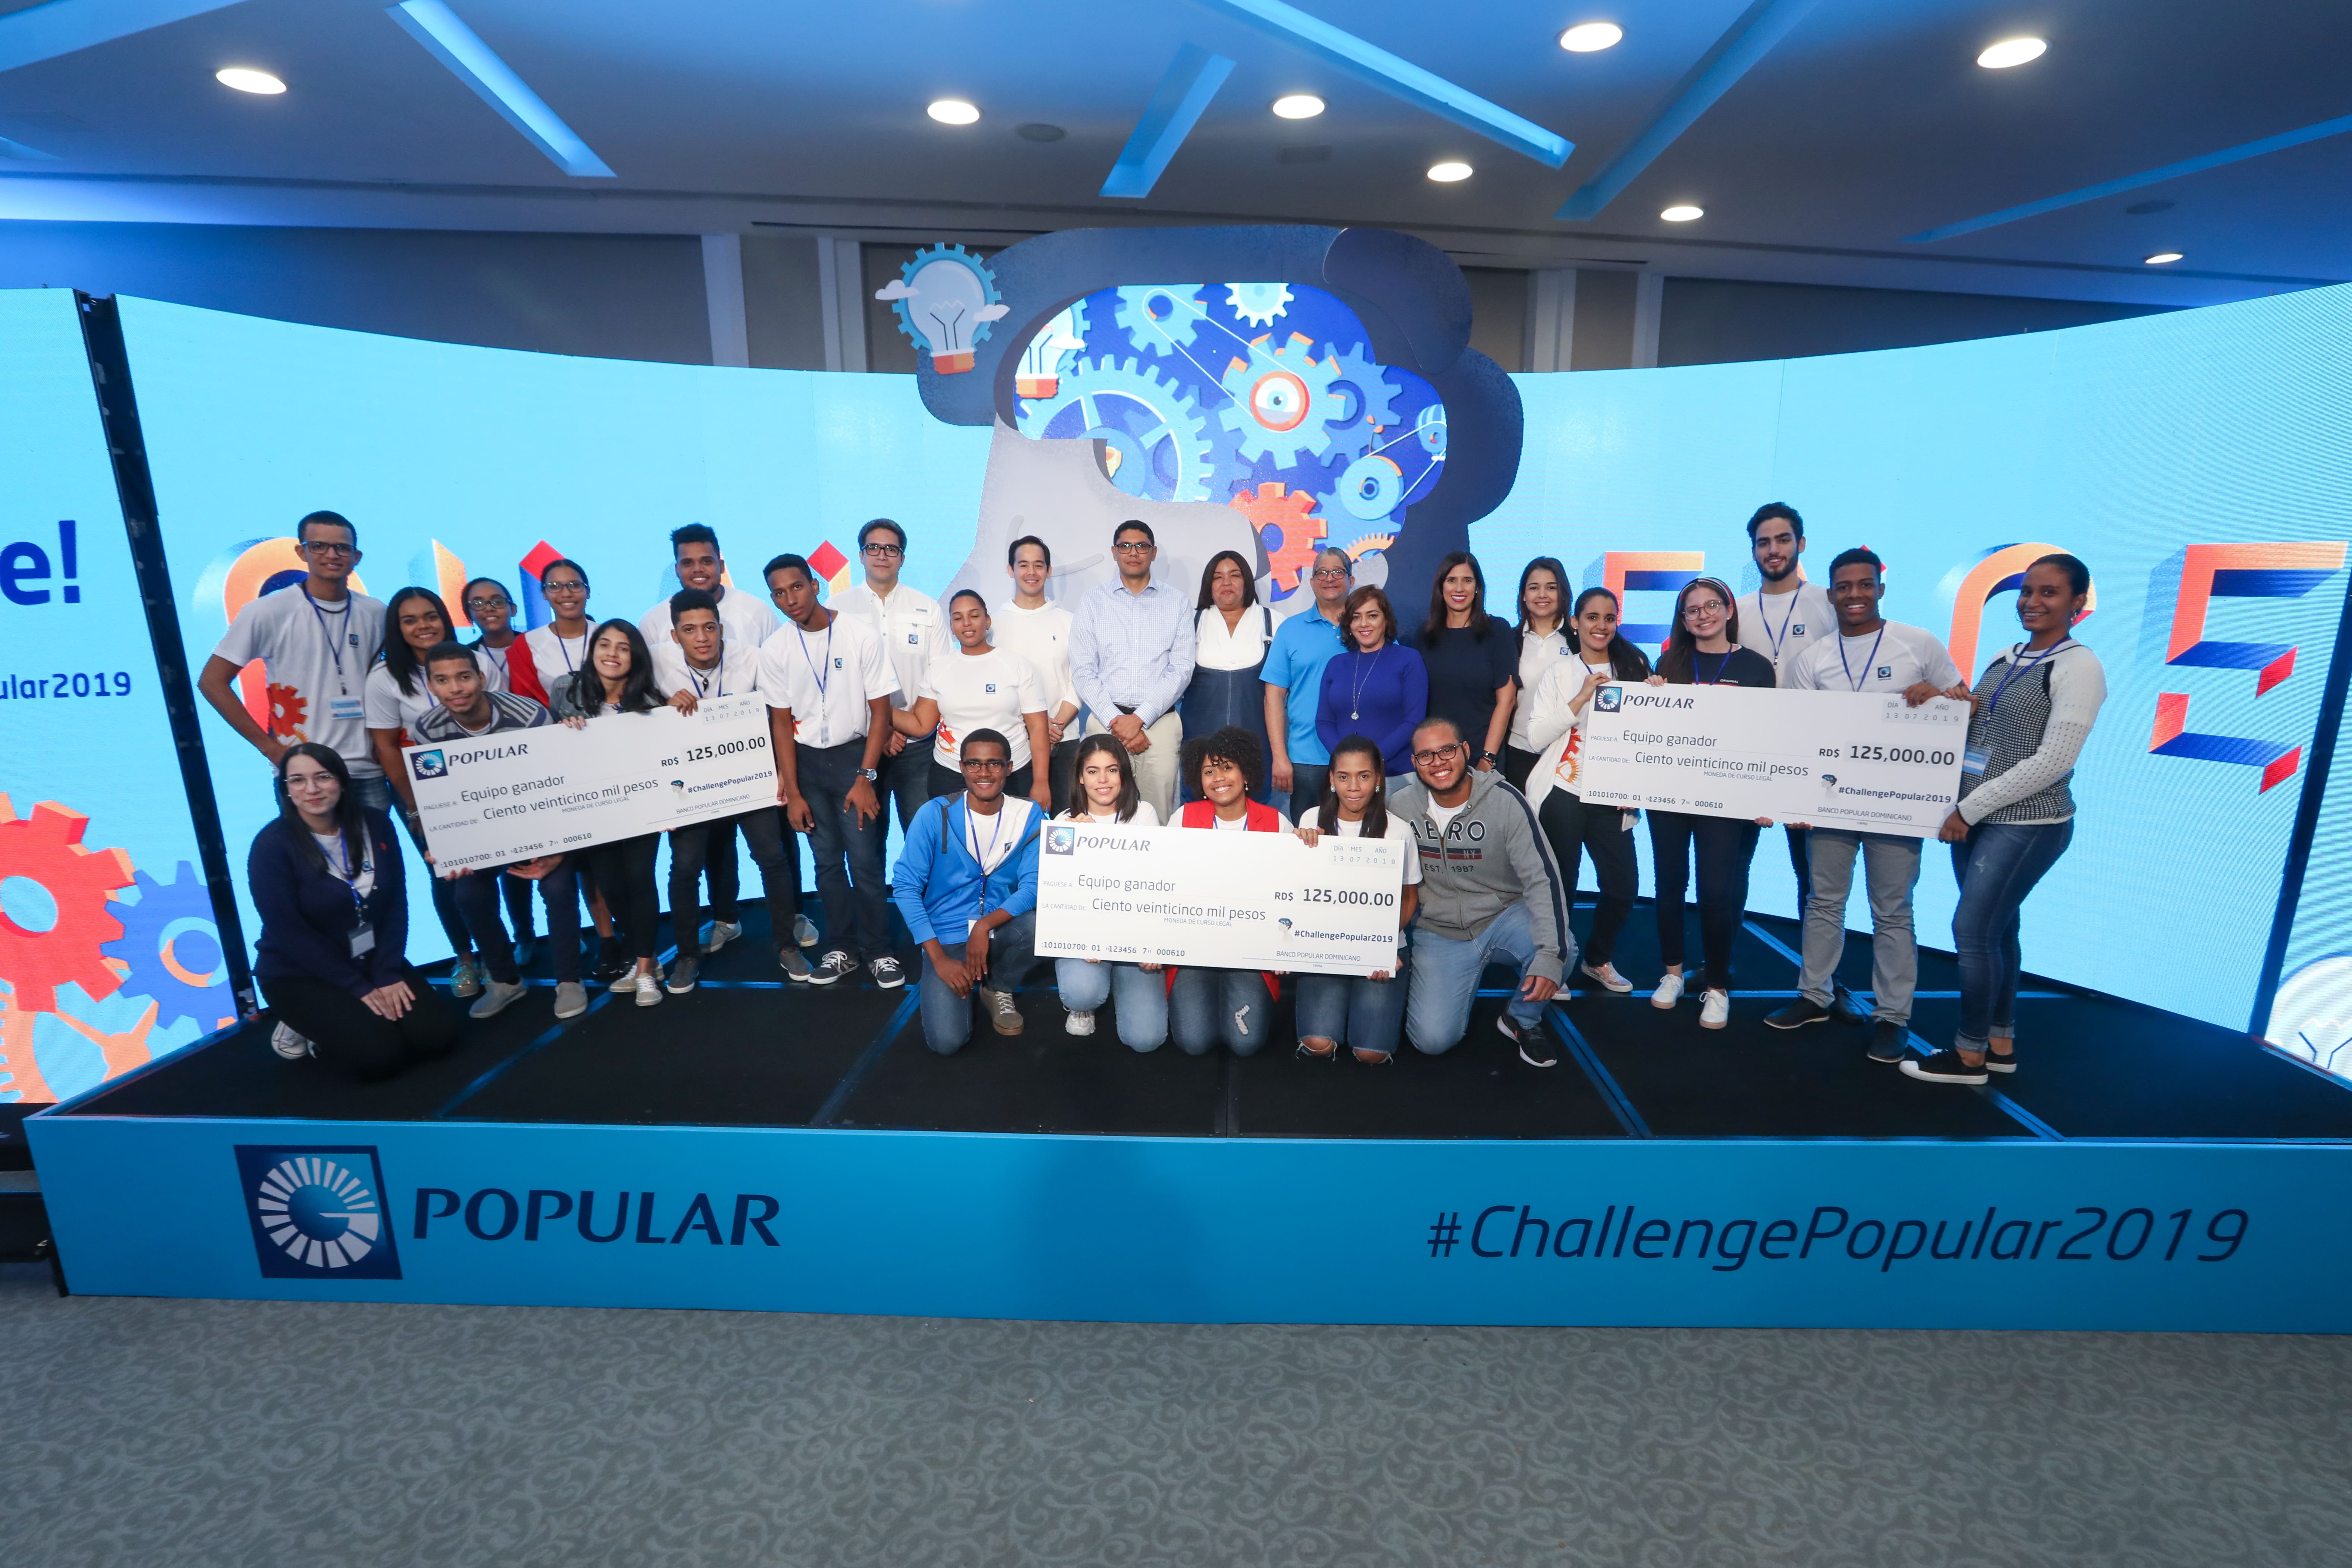 Maratón de emprendimiento del Popular premia la cooperación y creatividad de los jóvenes